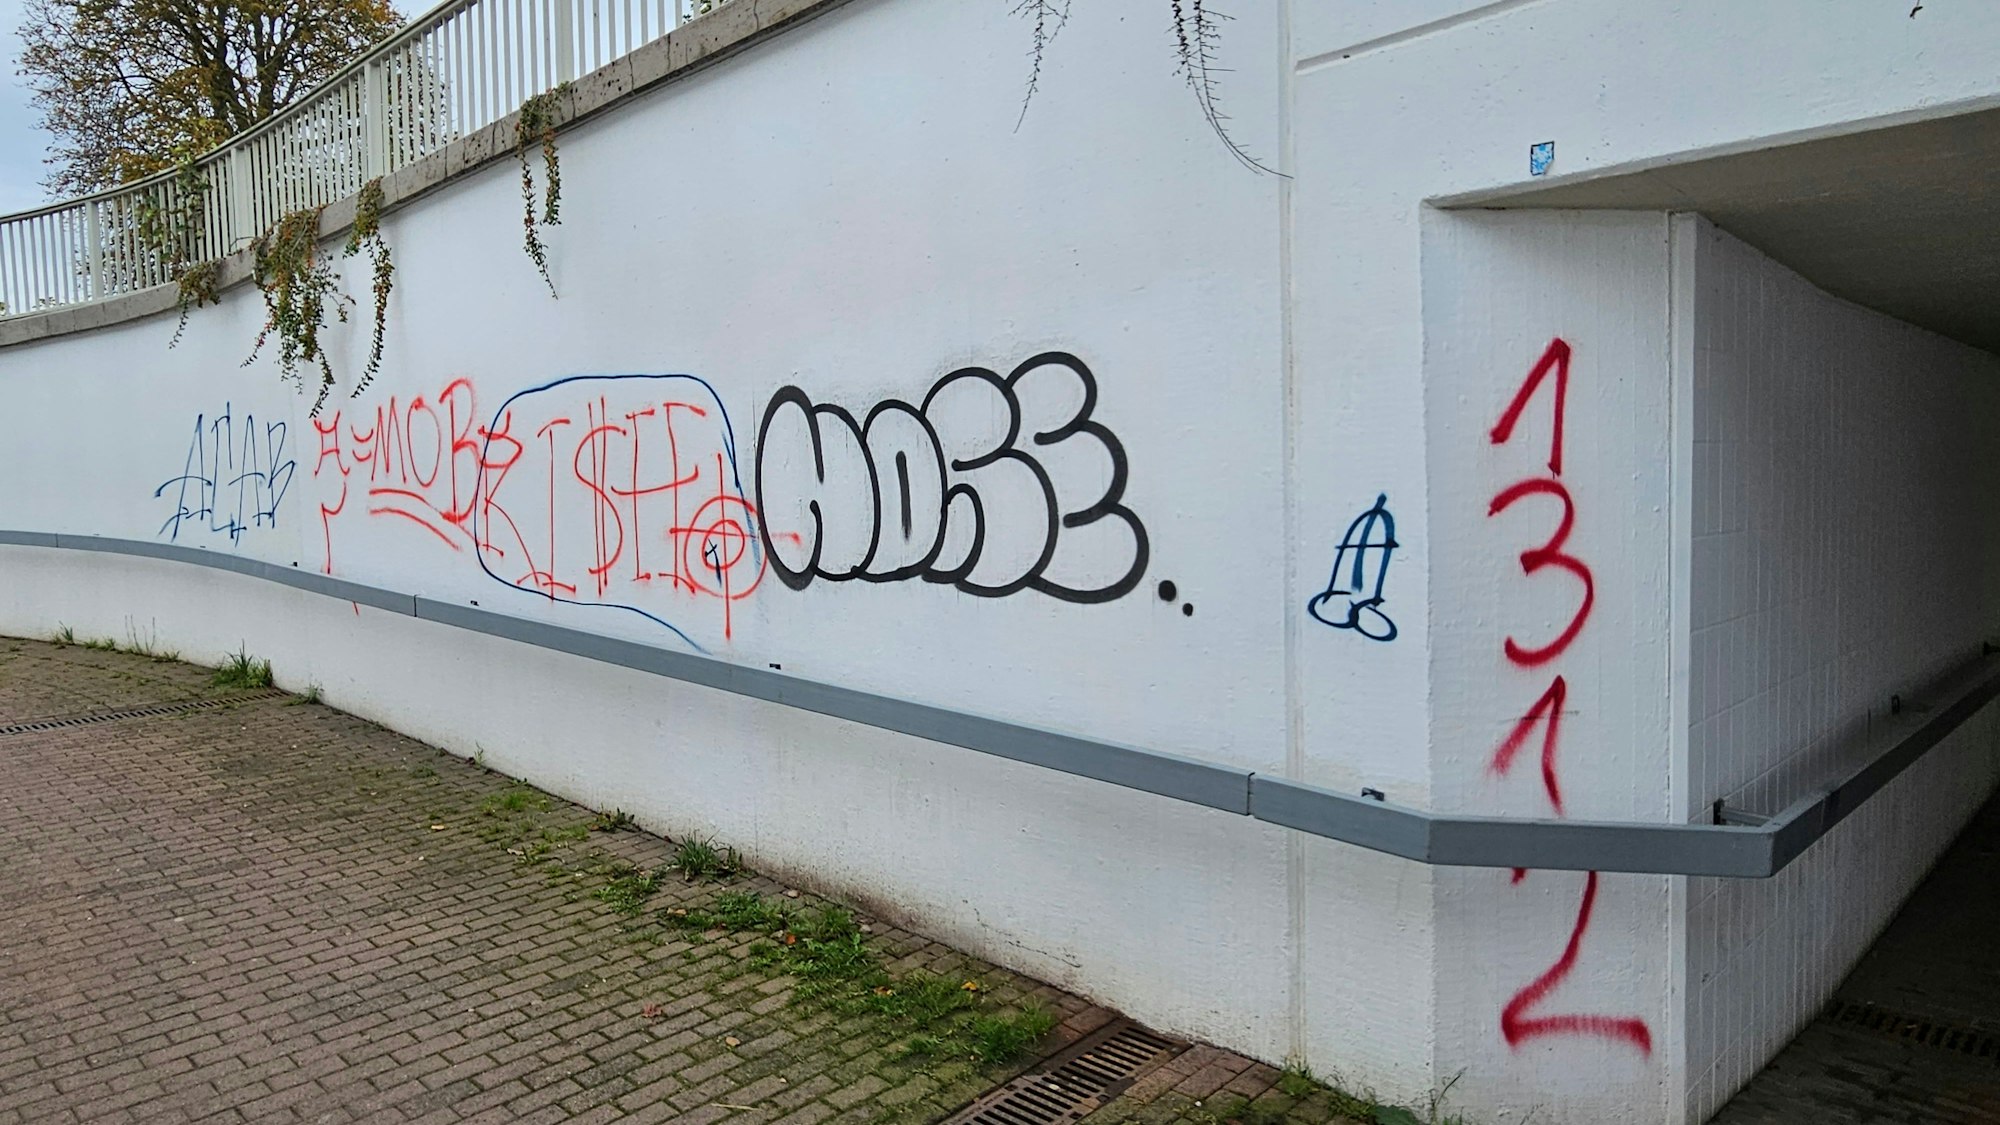 Die Wand einer Unterführung ist voll verschiedener Graffiti.